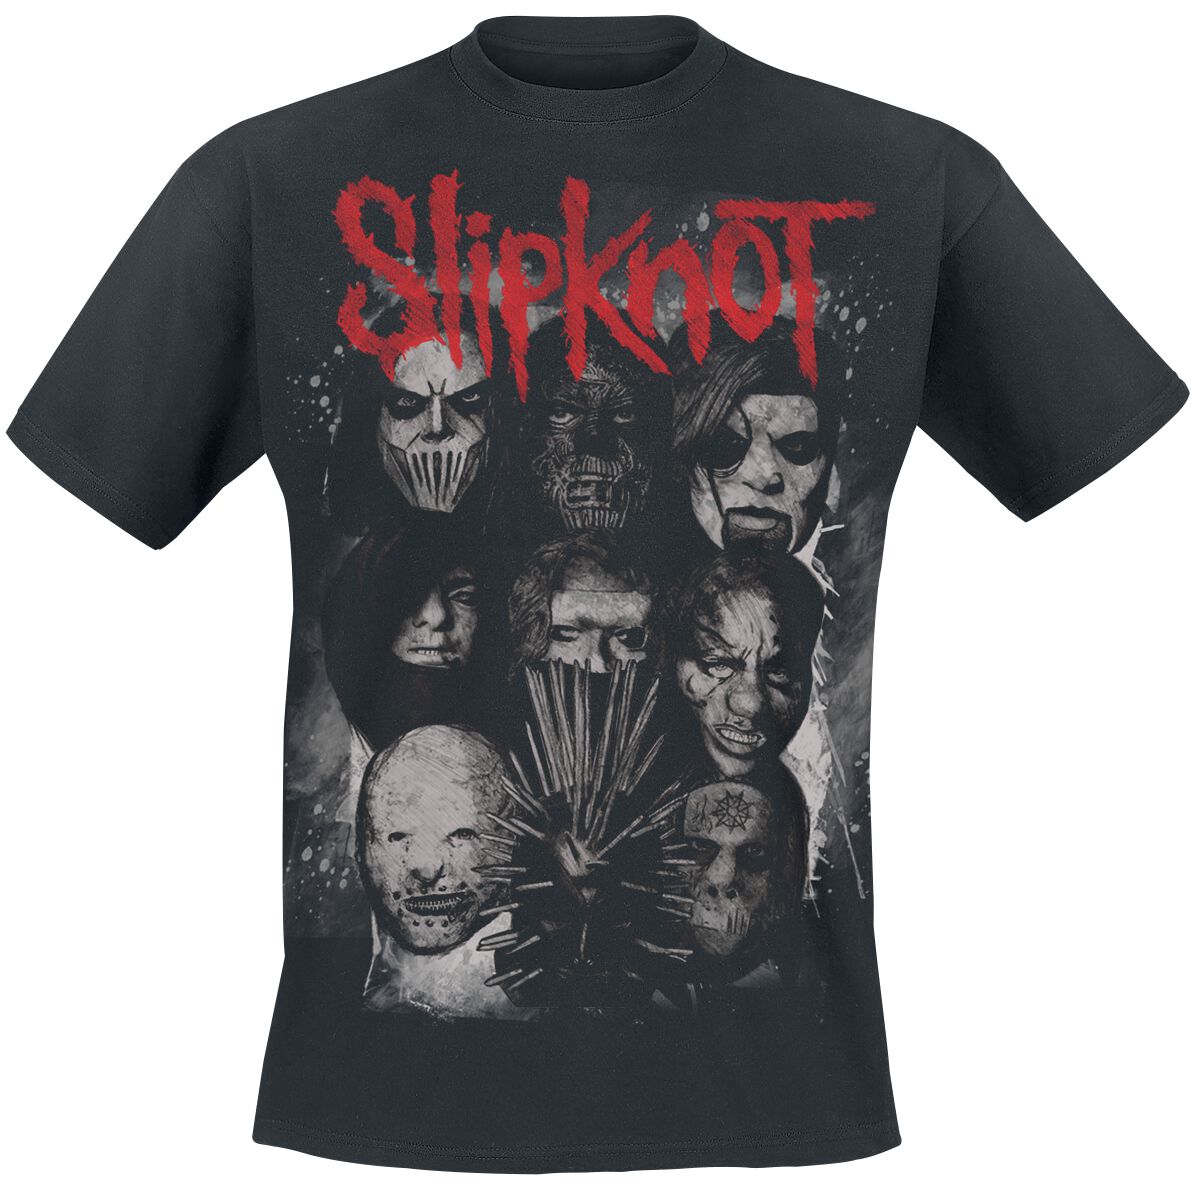 Slipknot T-Shirt - We Are Not Your Kind - Masks - S bis XXL - für Männer - Größe XXL - schwarz  - Lizenziertes Merchandise!